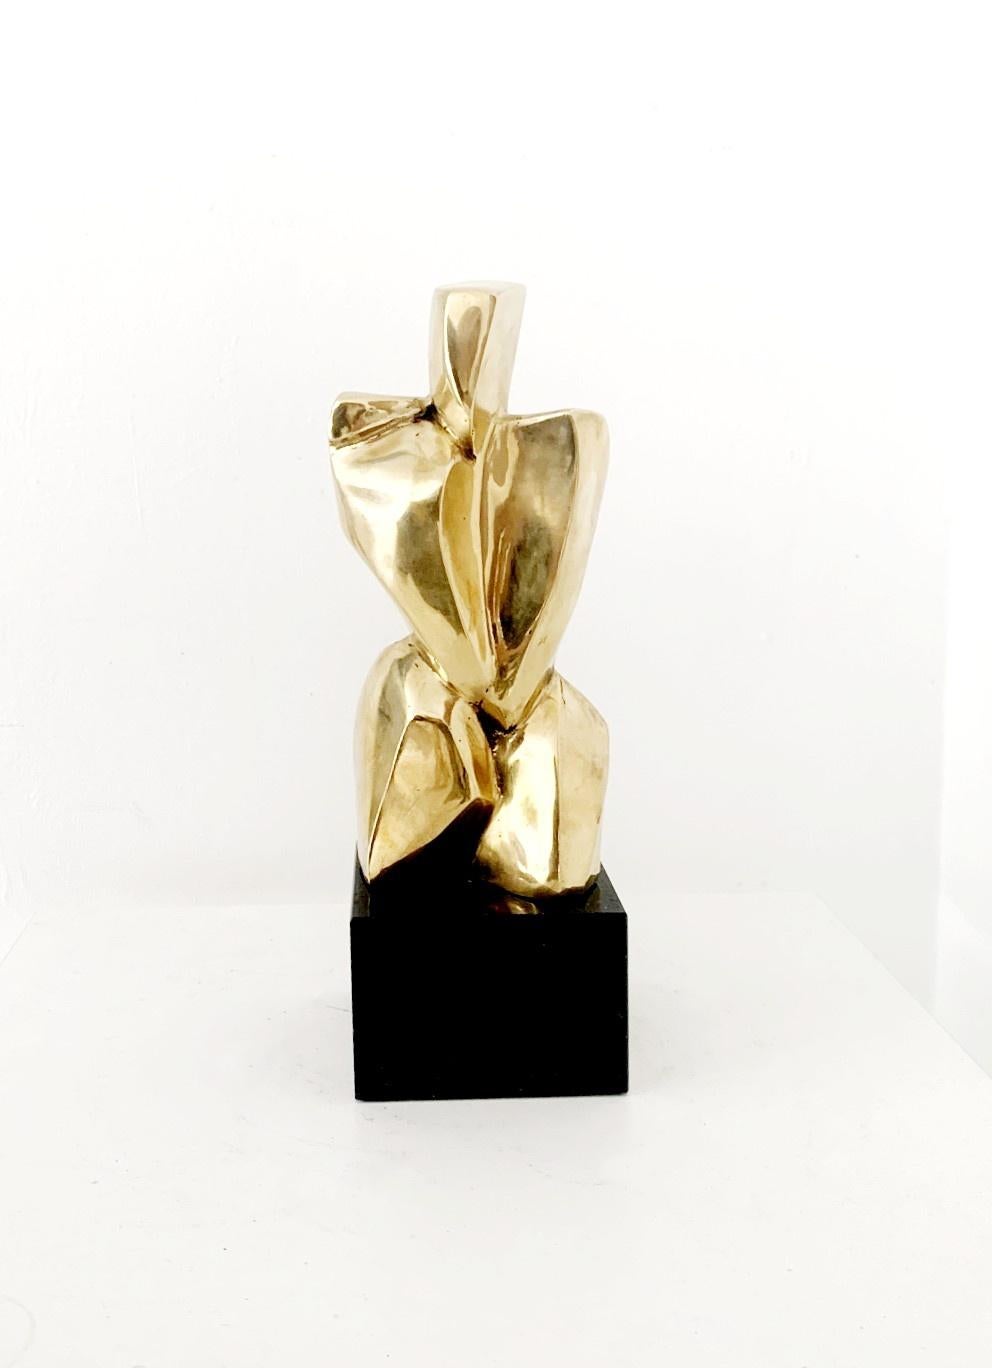 Ryszard Piotrowski Nude Sculpture - Nude - 21st Century, Contemporary Brass Figurative Sculpture, Polish art